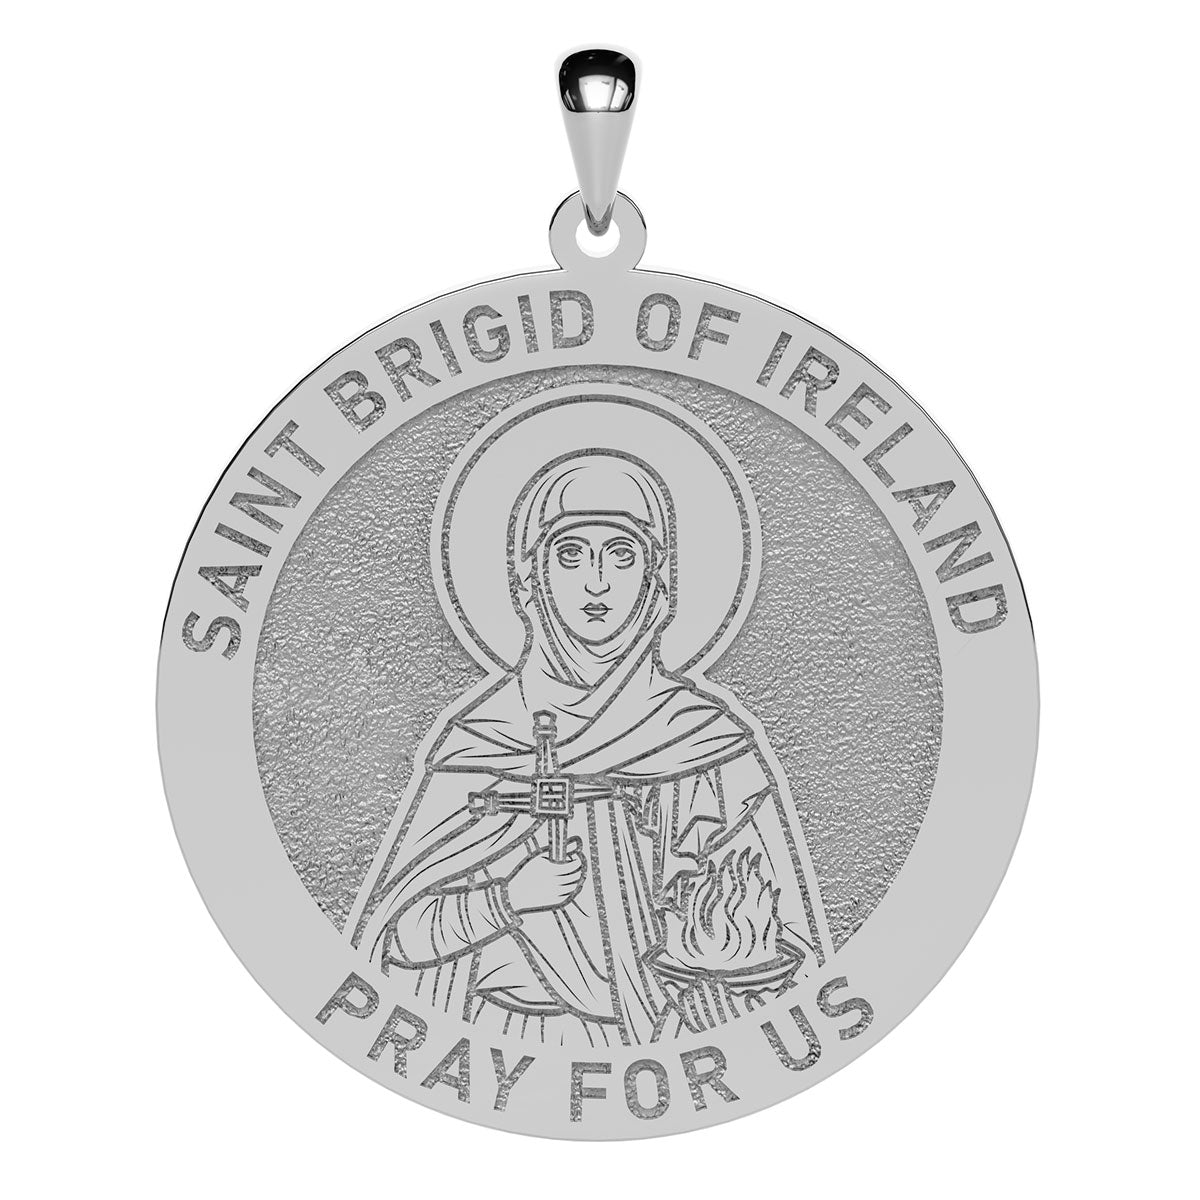 Saint Brigid of Ireland Round Religious Medal